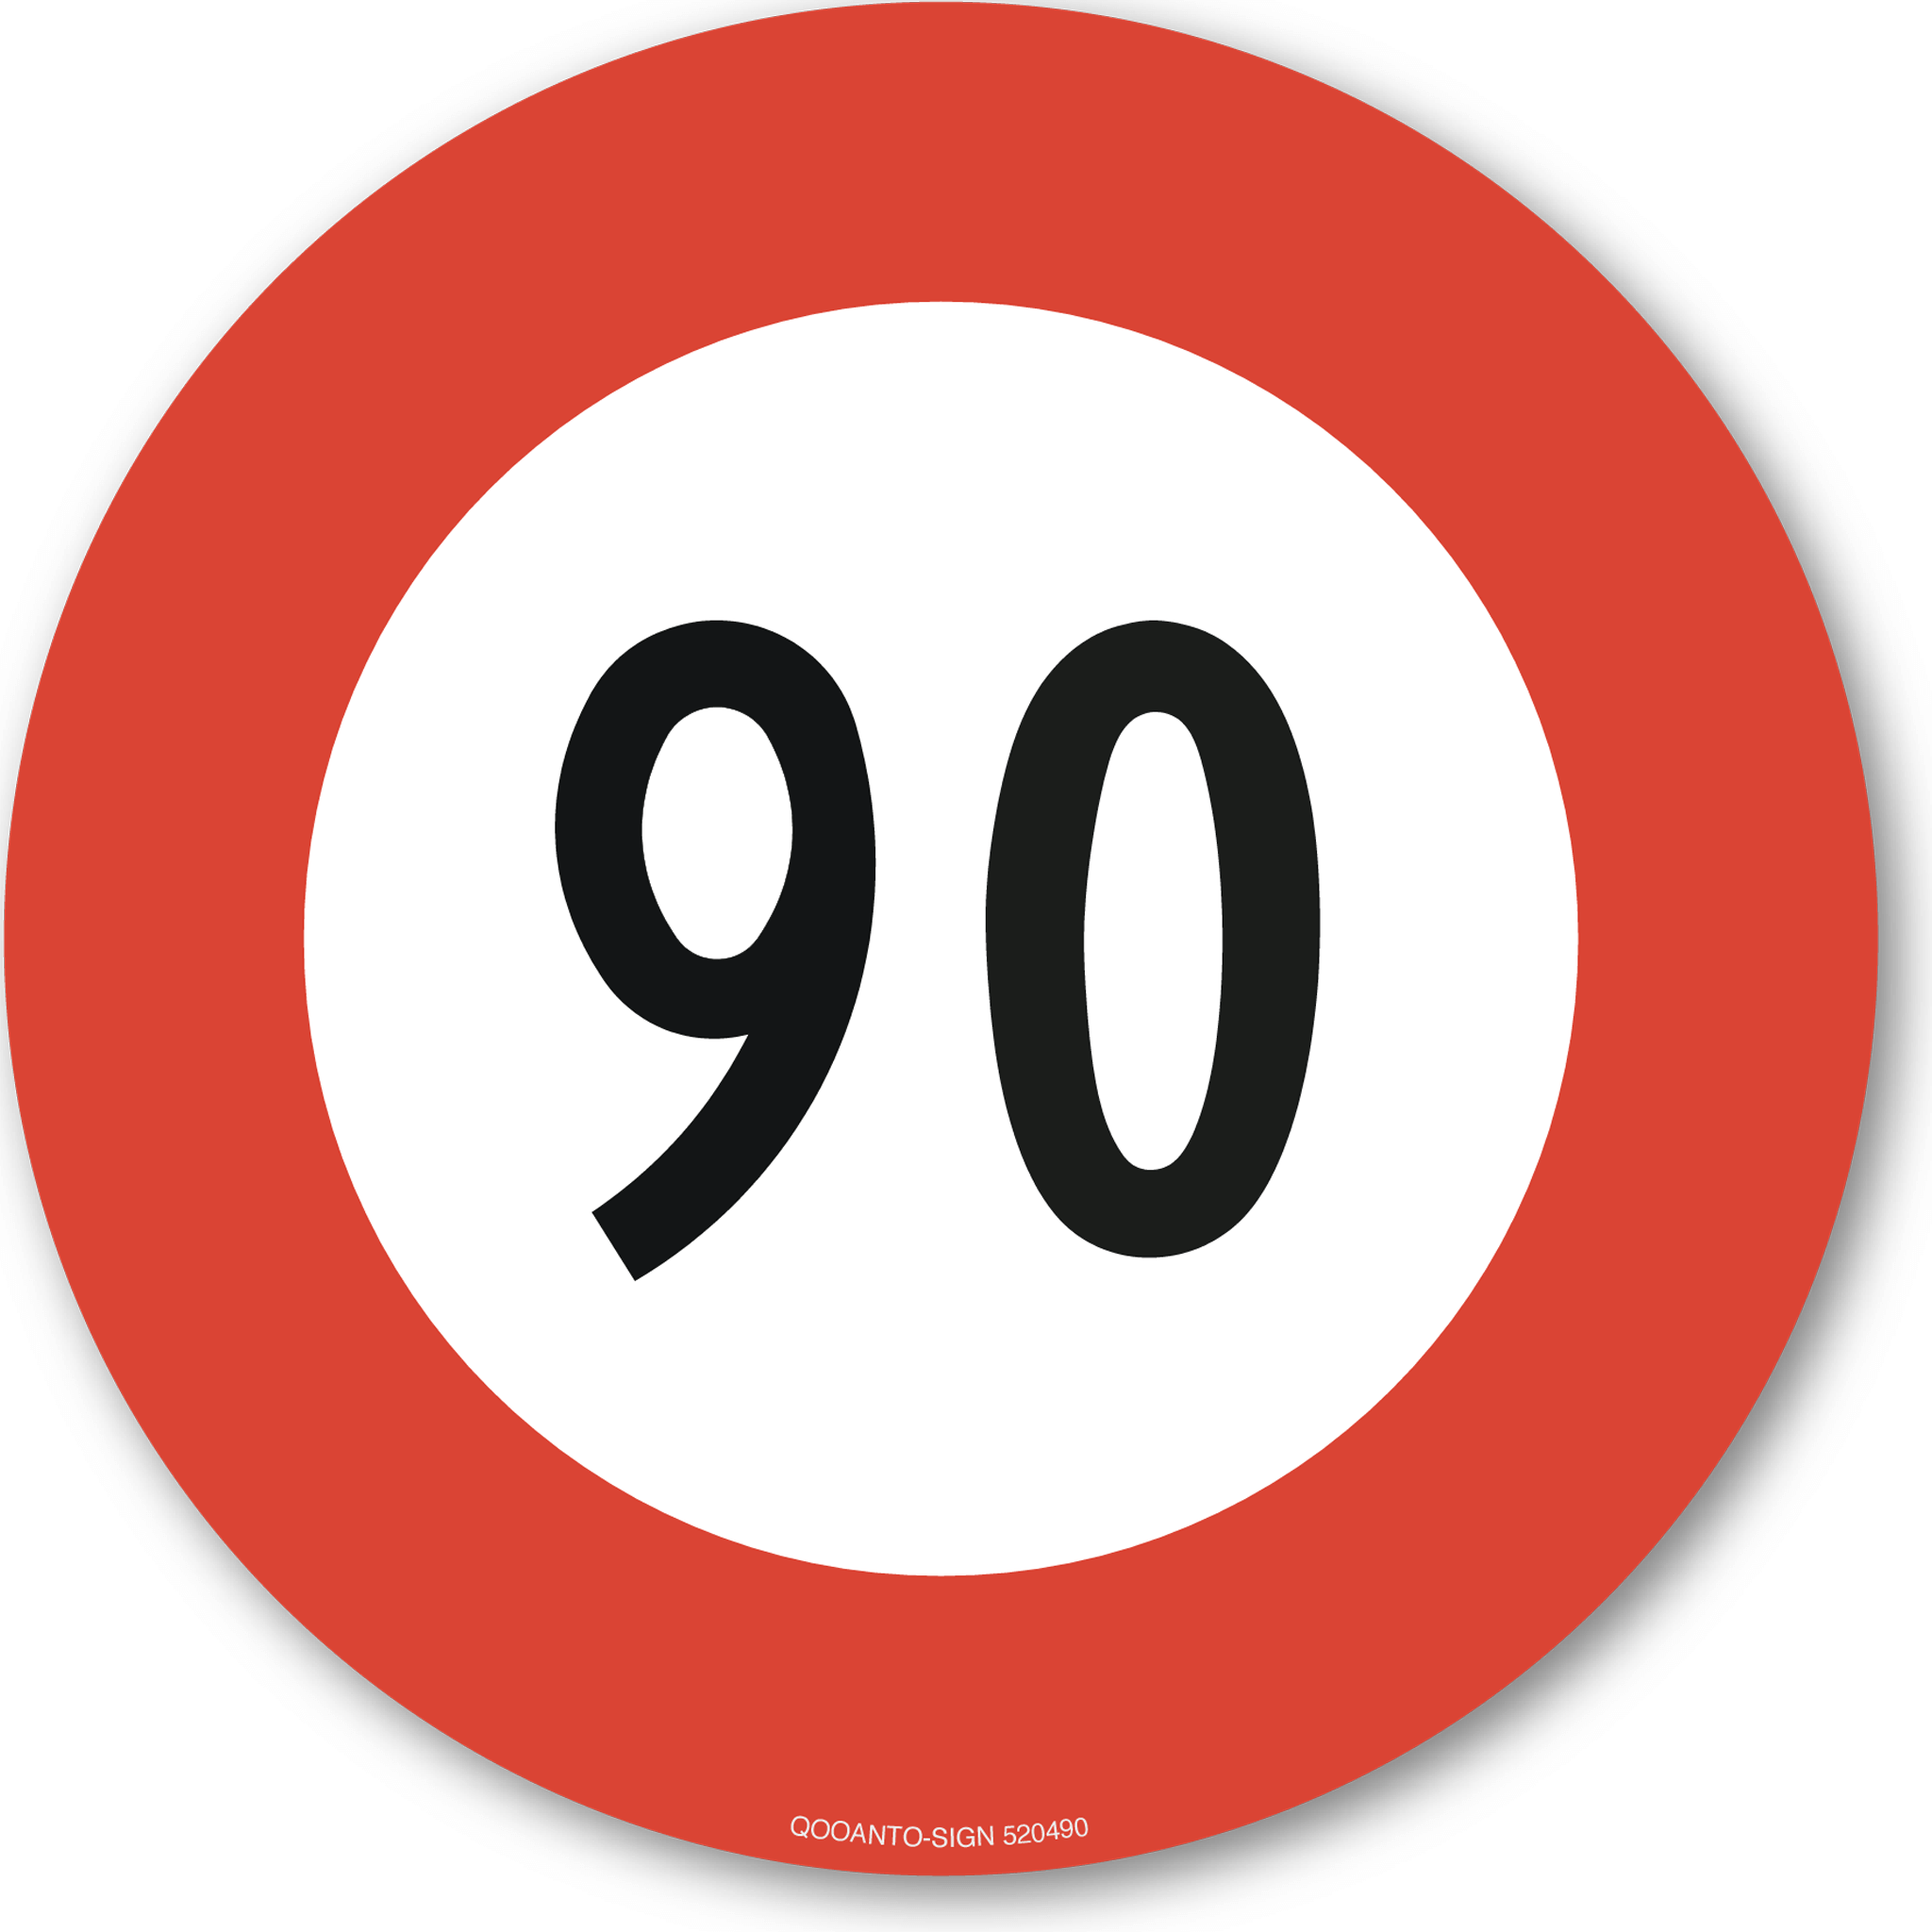 Höchstgeschwindigkeit - 90, Schild oder Aufkleber